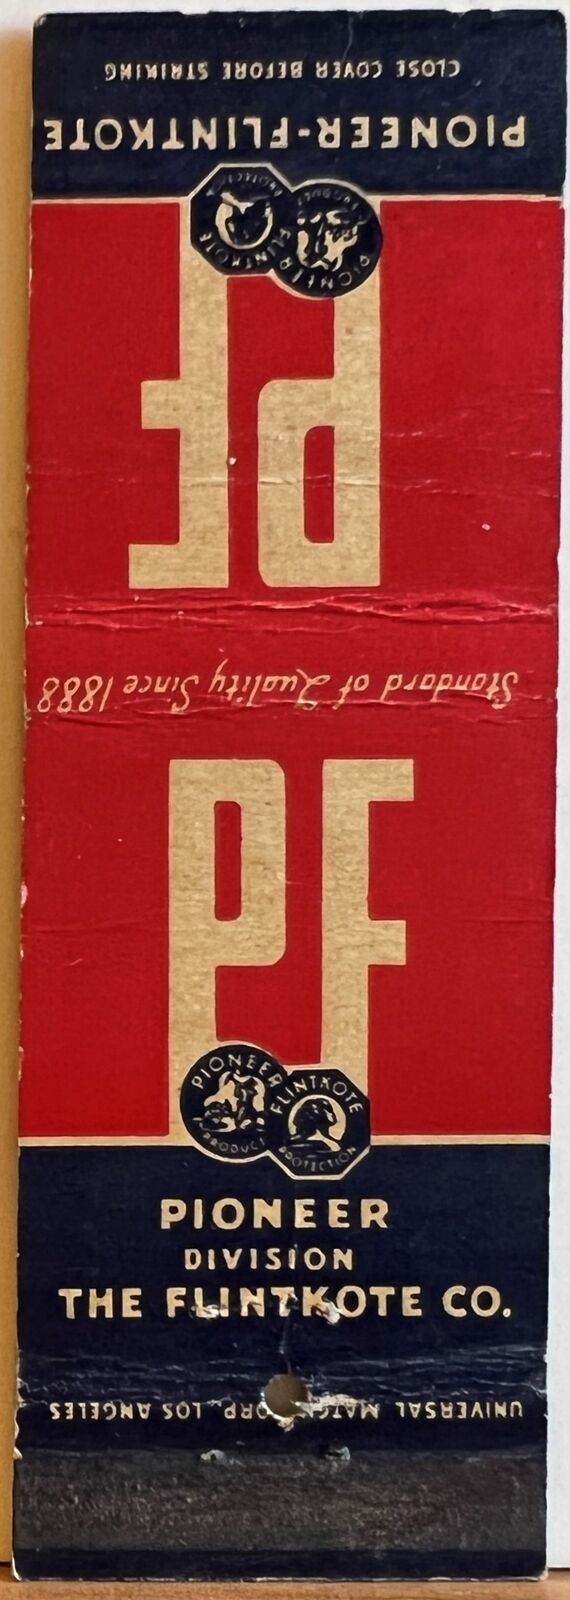 Pioneer Flintkote Division of The Flintkote Co Vintage Matchbook Cover